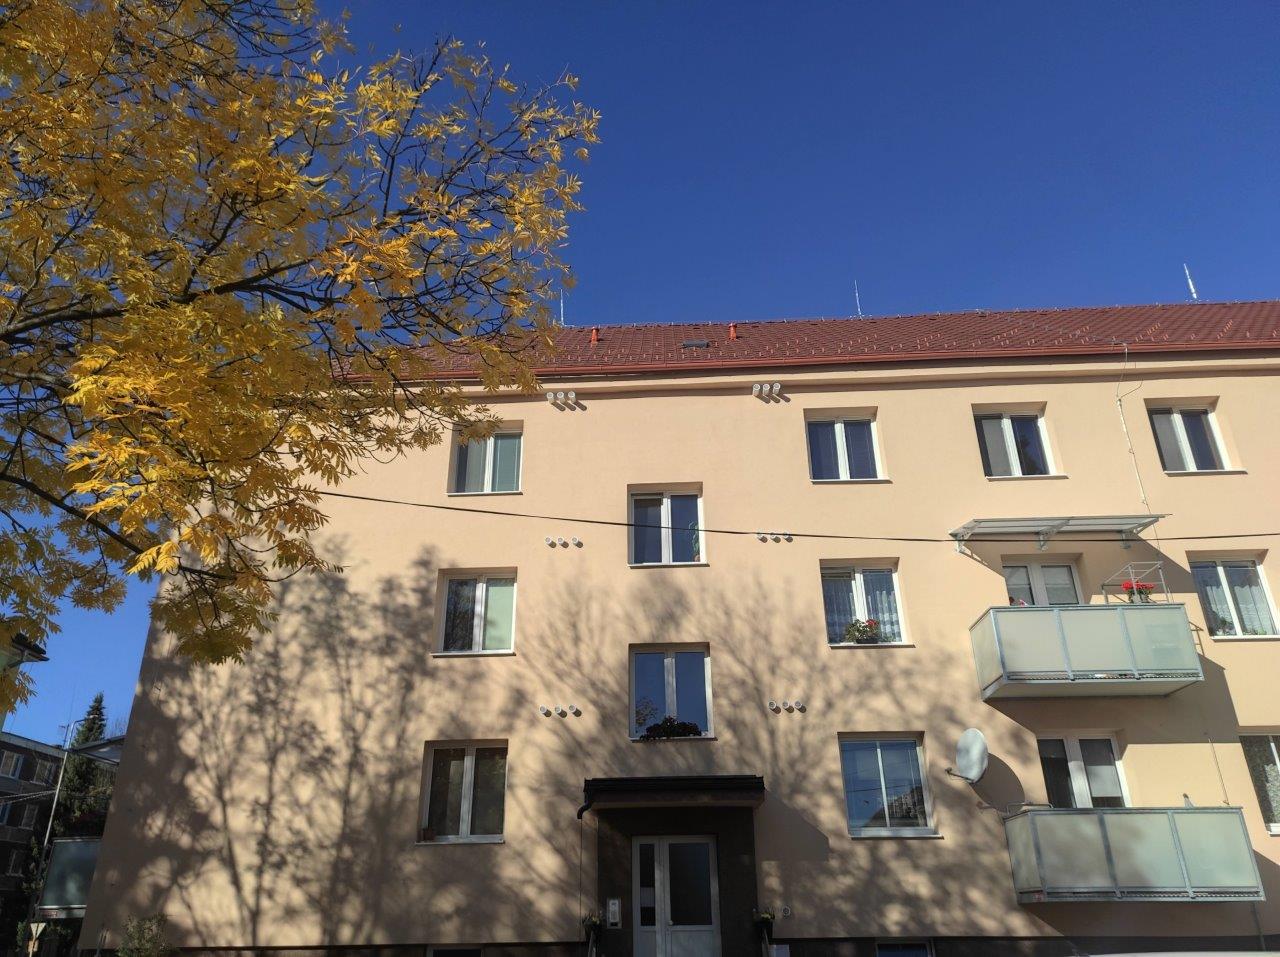 Bytový dom v Brezne ušetril zateplením takmer 60% na energiách